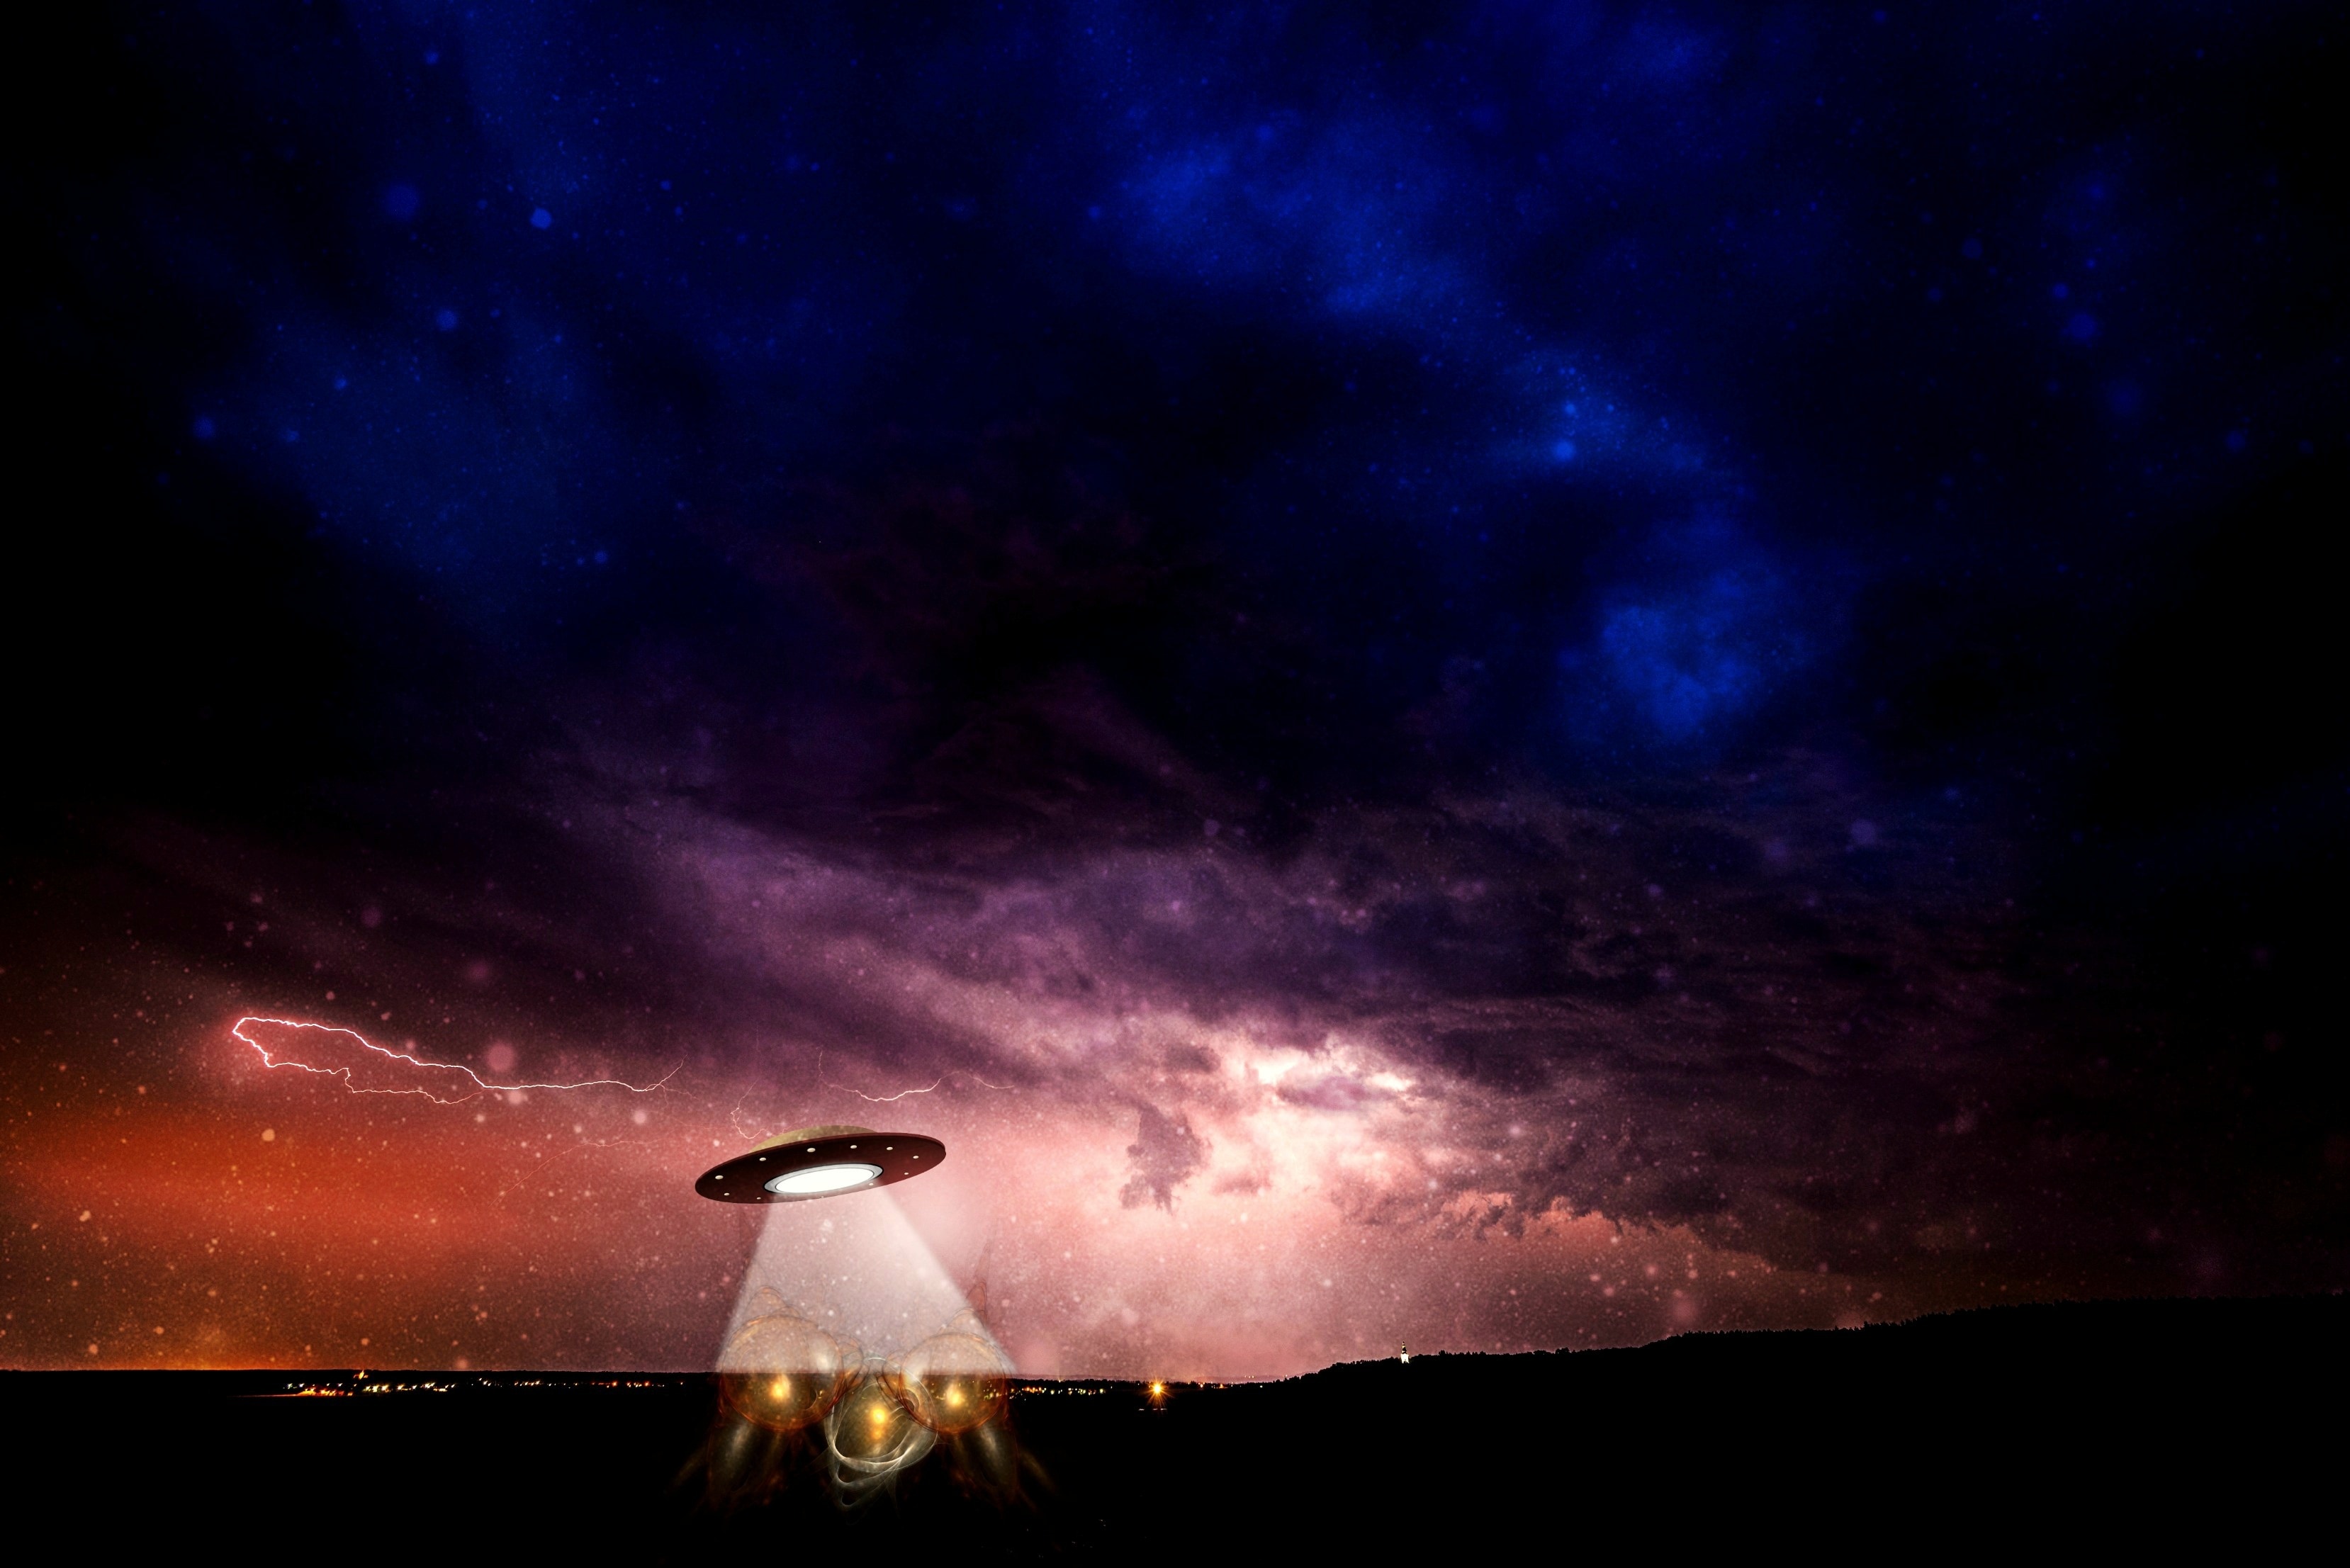 Ufo, Science Fiction, Futuristic, Alien, night, cloud - sky